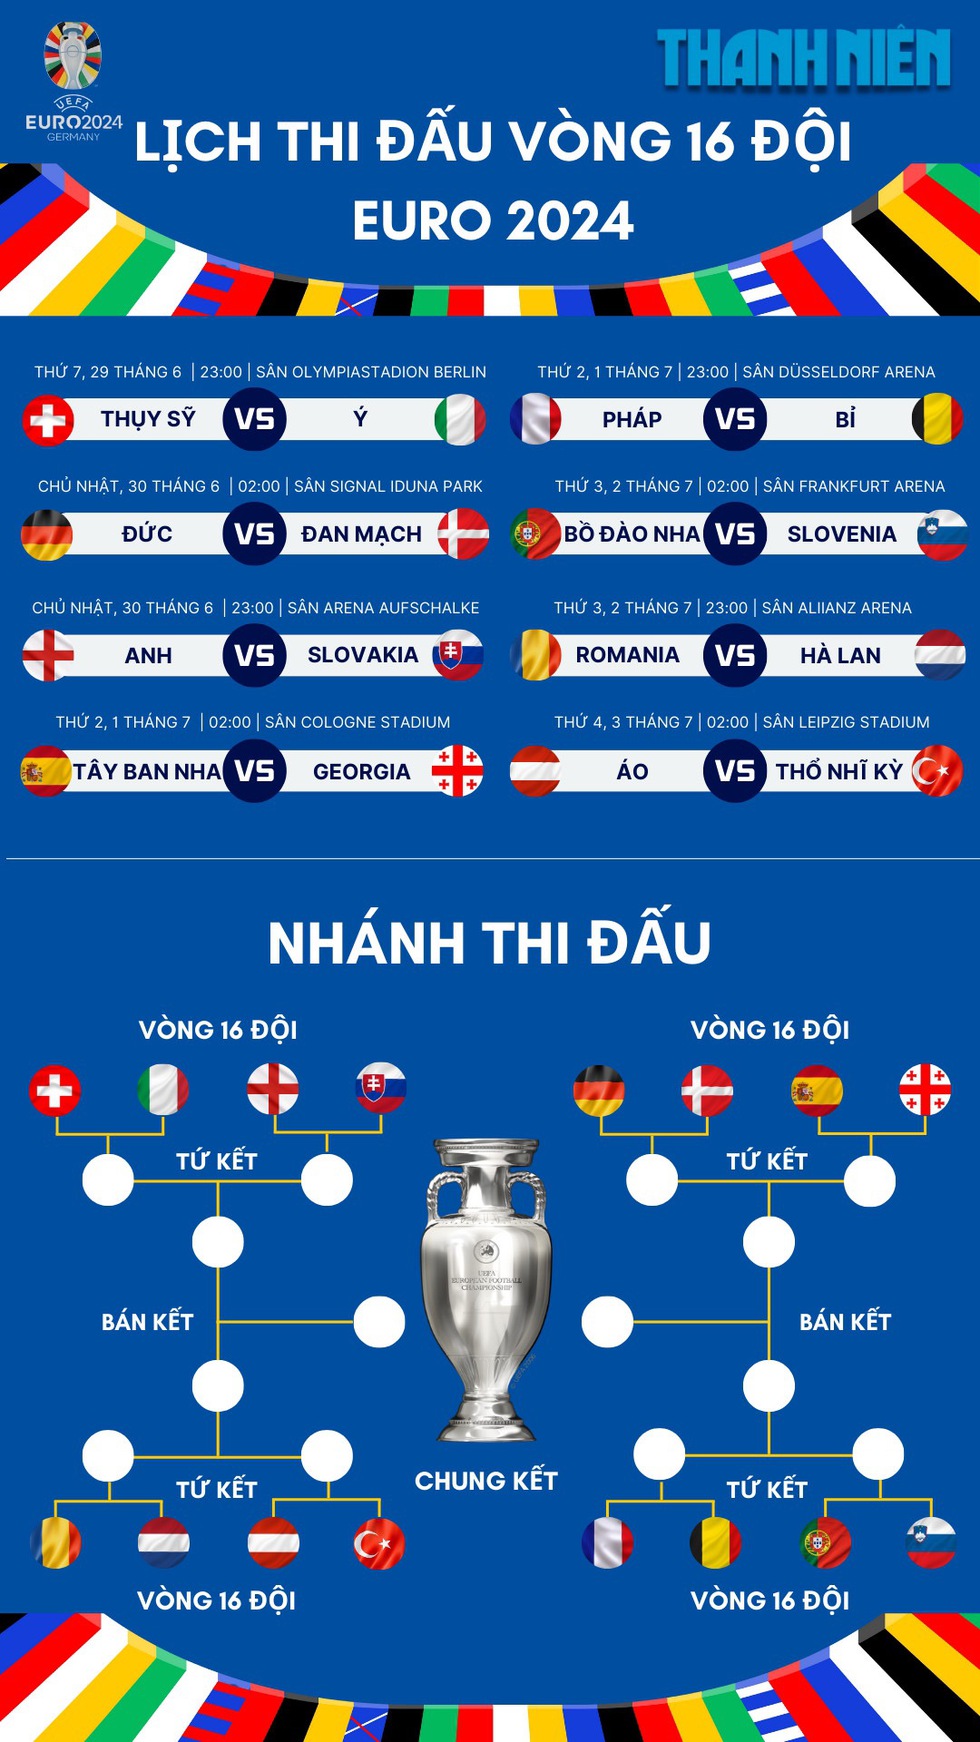 Lịch thi đấu vòng 16 đội EURO 2024: Bắt đầu ngày nào, liệu có những cú sốc?- Ảnh 5.